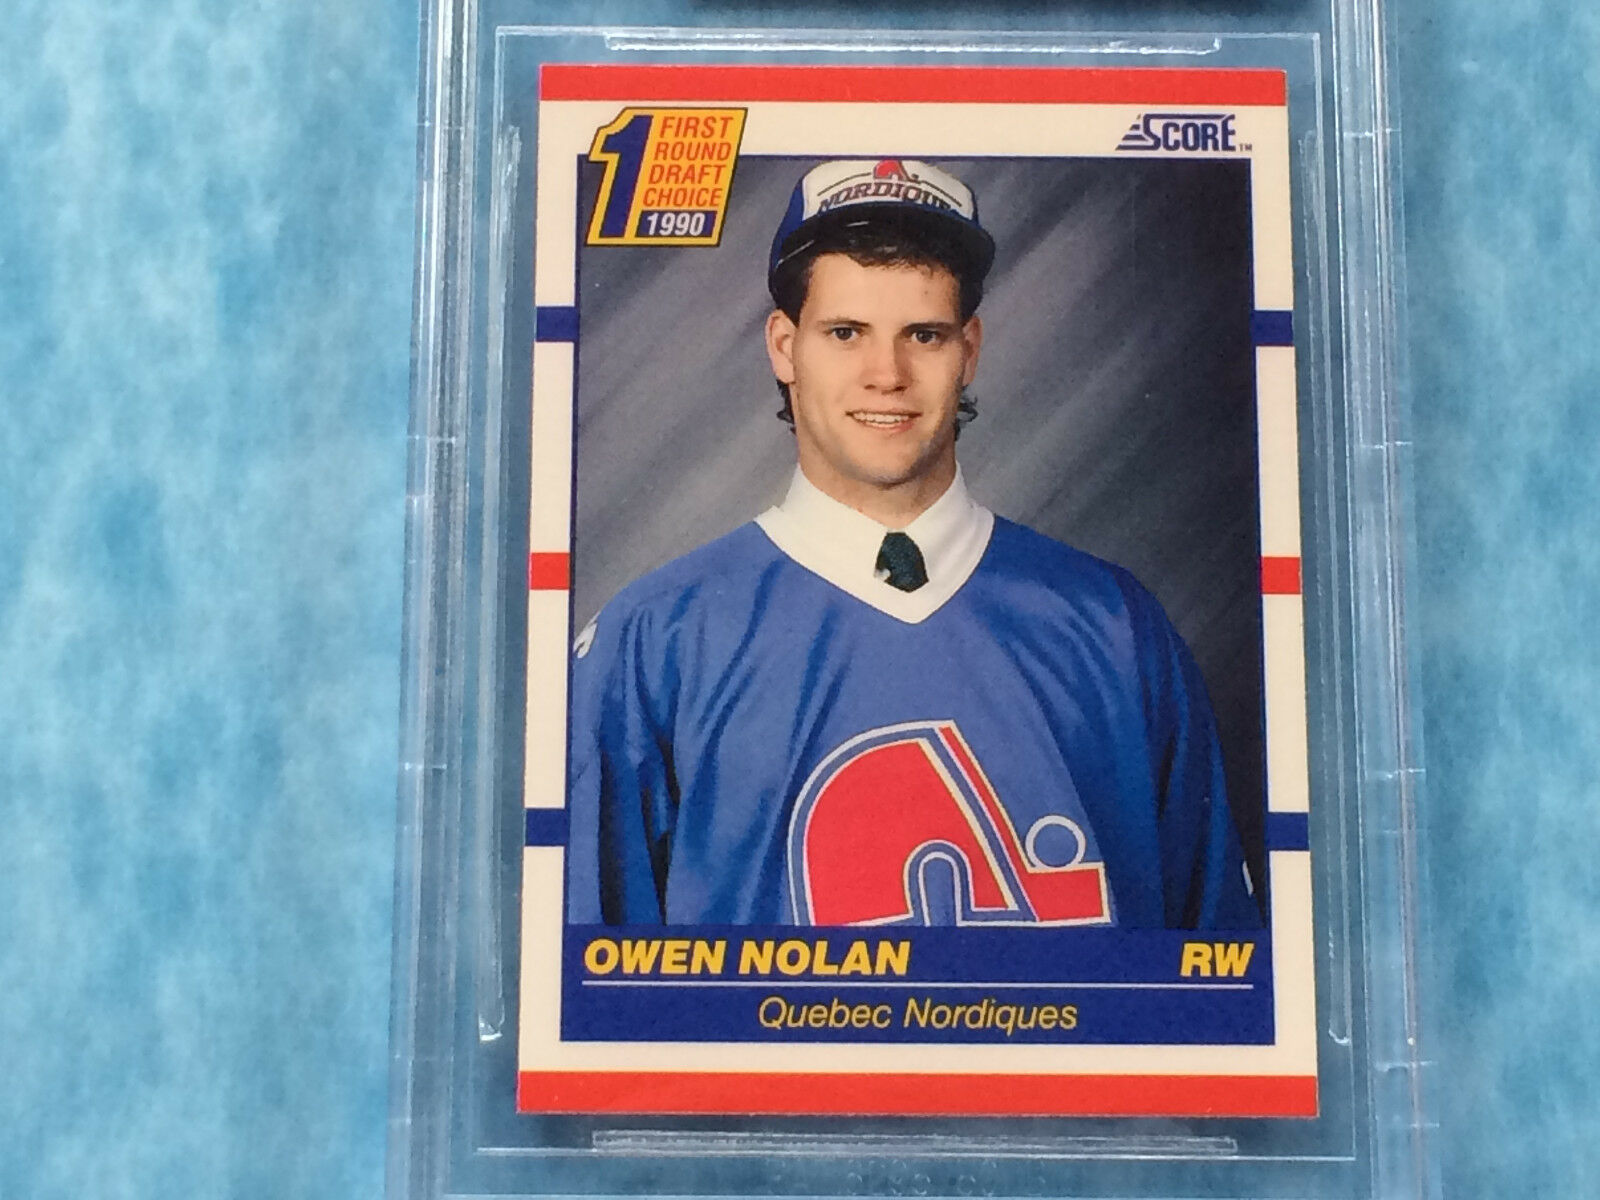 1991 Score Owen Nolan Quebec Nordiques - Owen Nolan , HD Wallpaper & Backgrounds